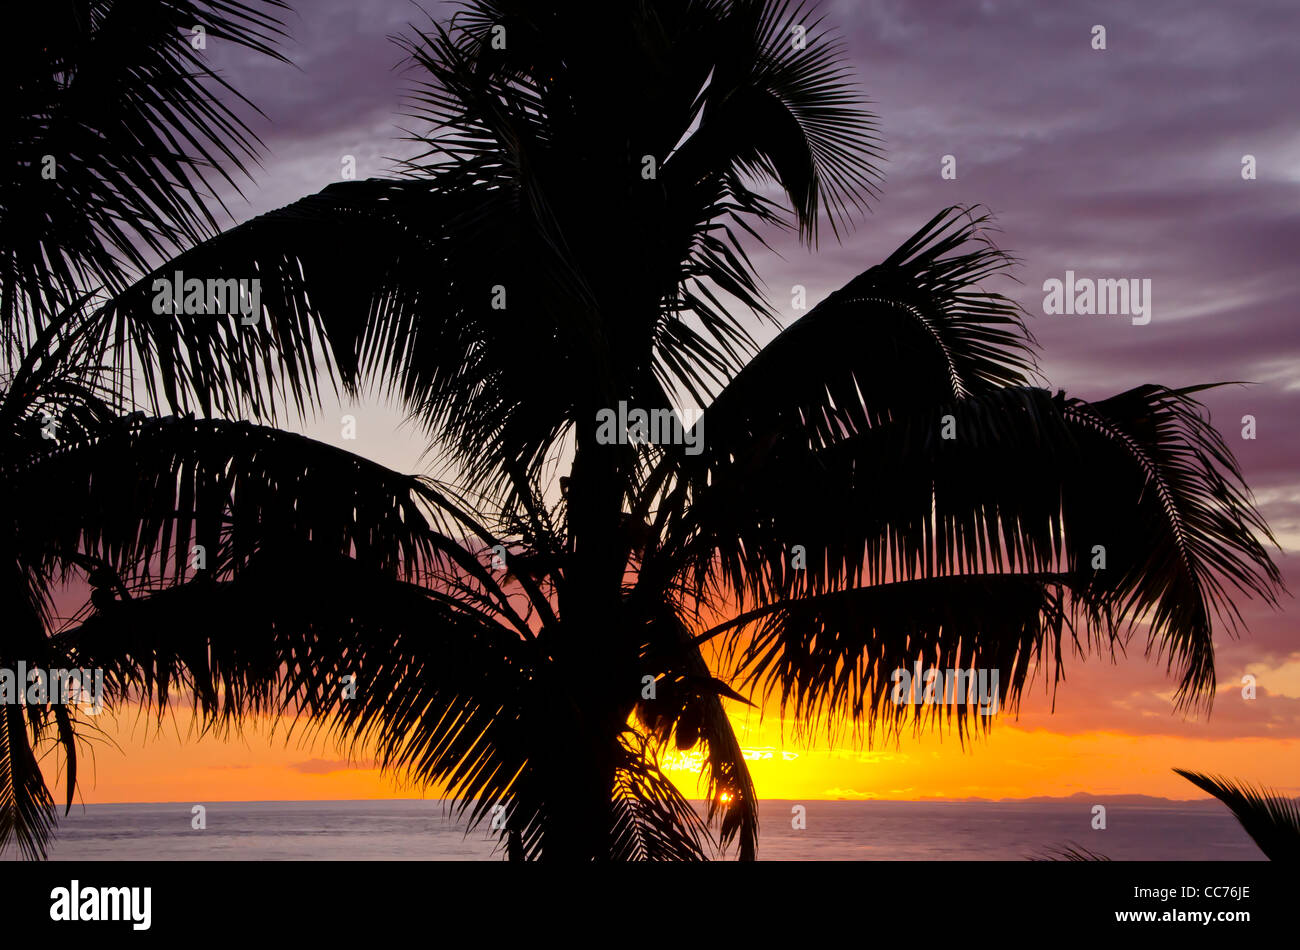 Les frondes de palmier Silhouette pt portrait iconique au coucher du soleil, les tropiques libre Banque D'Images